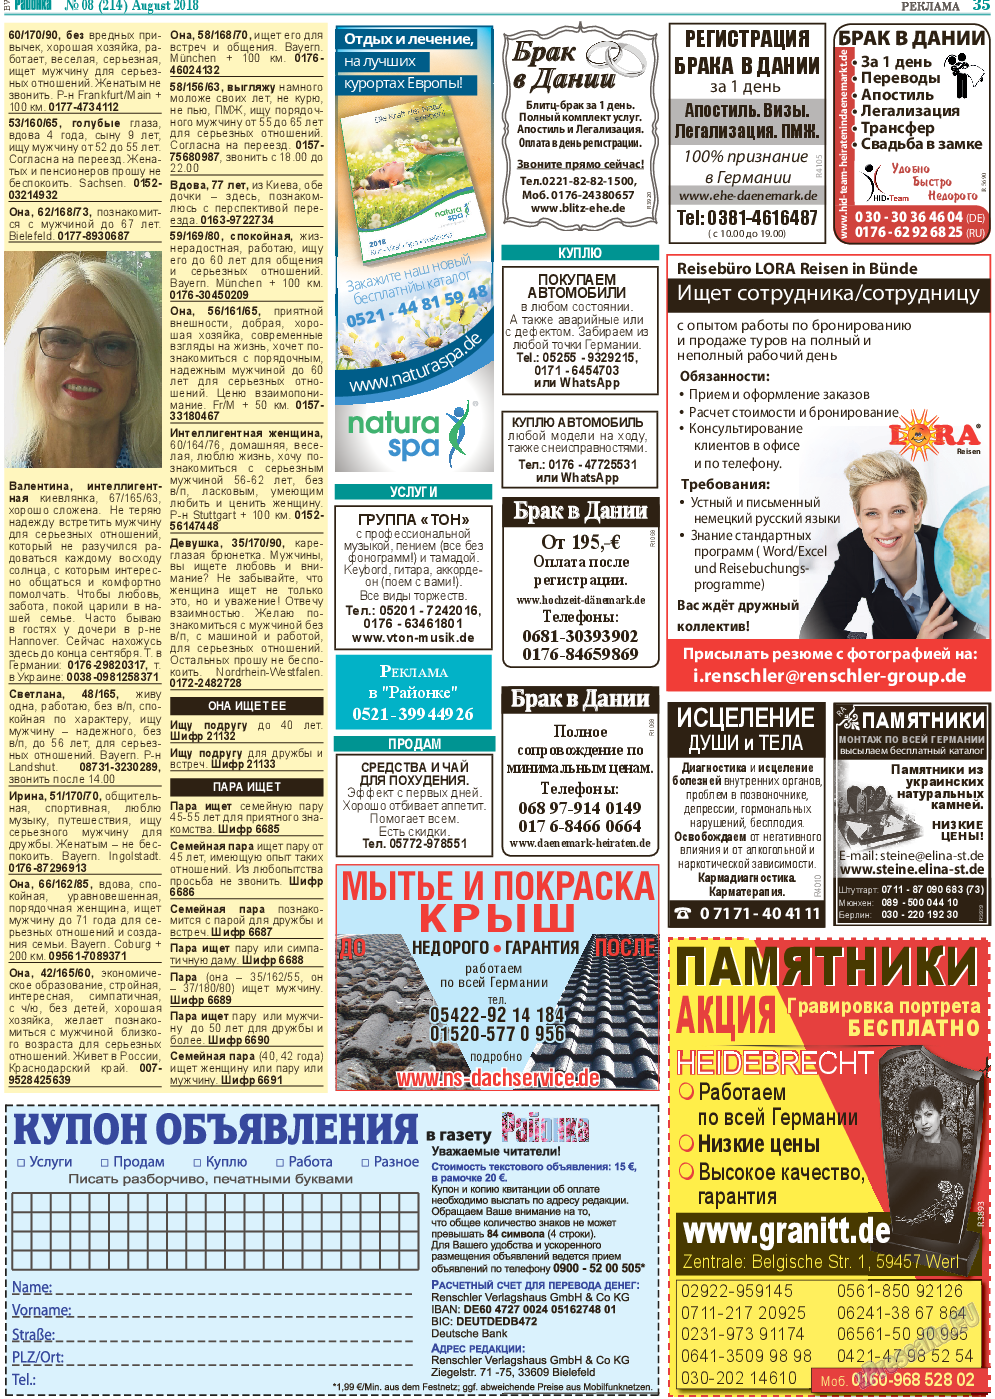 Районка-Süd-West, газета. 2018 №8 стр.35